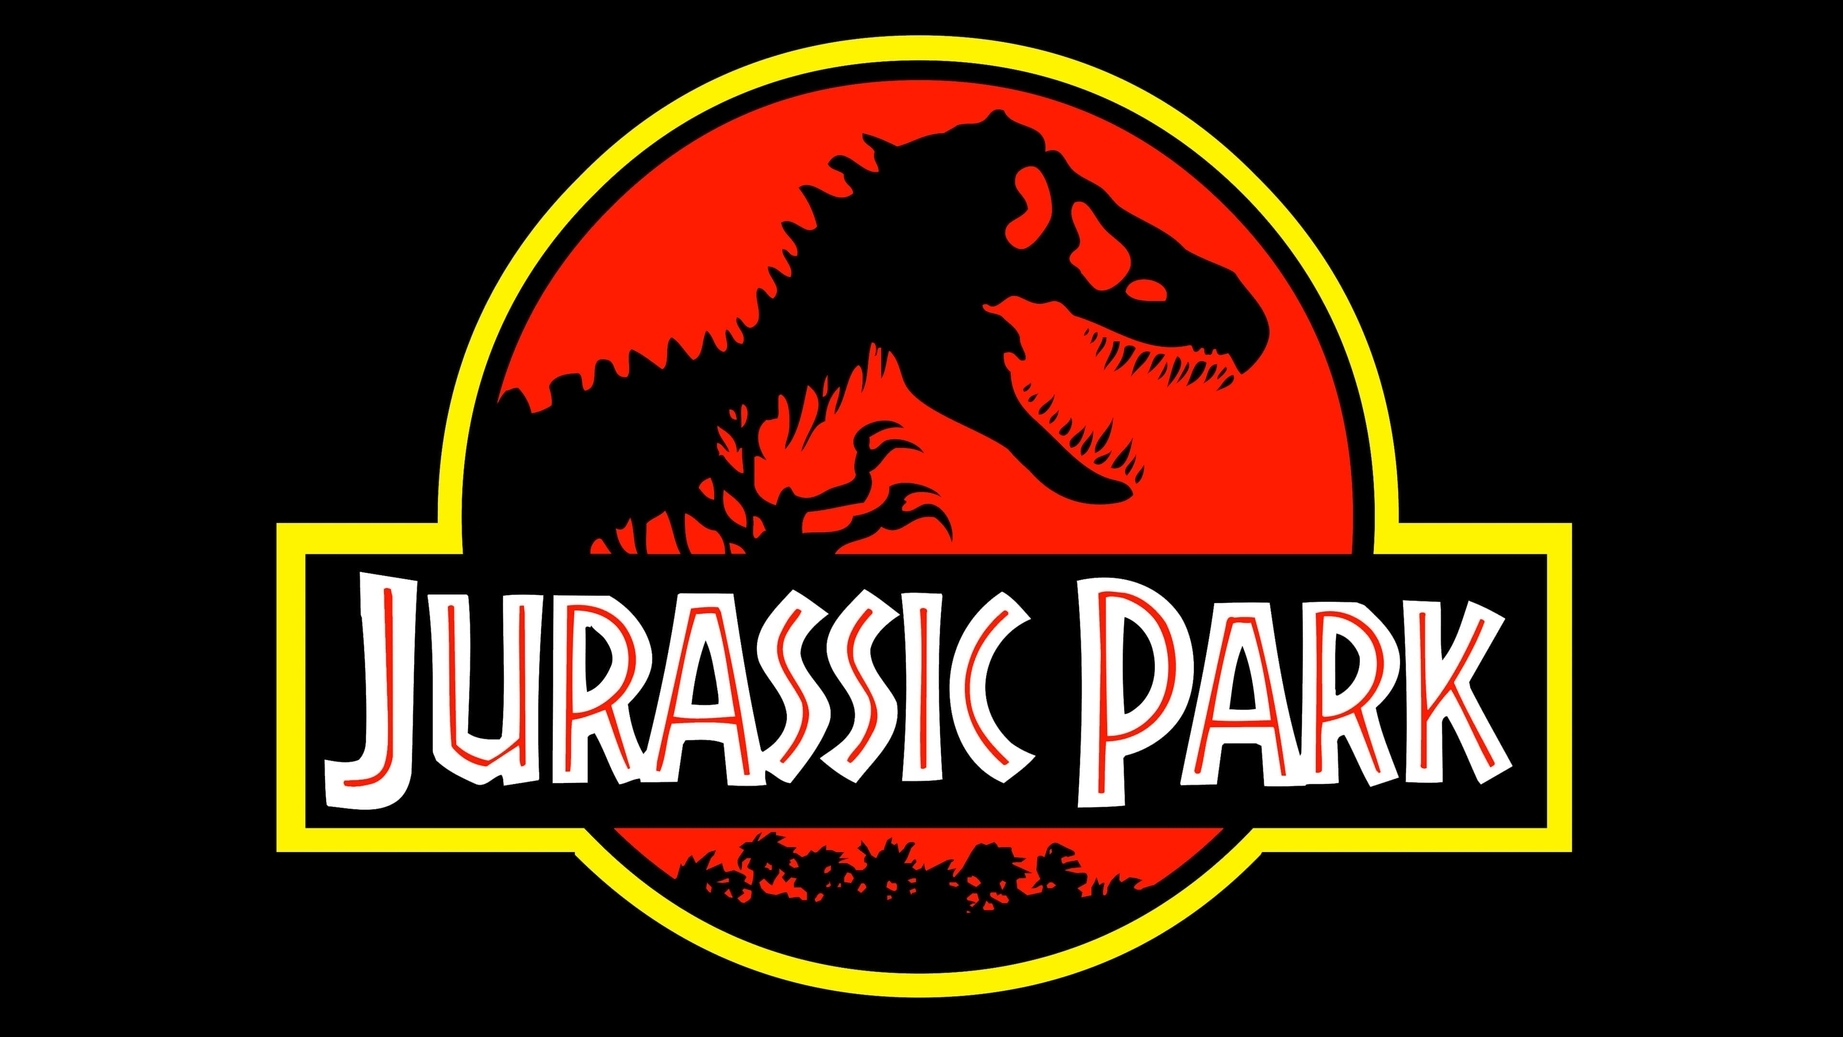 Jurassic park symbol